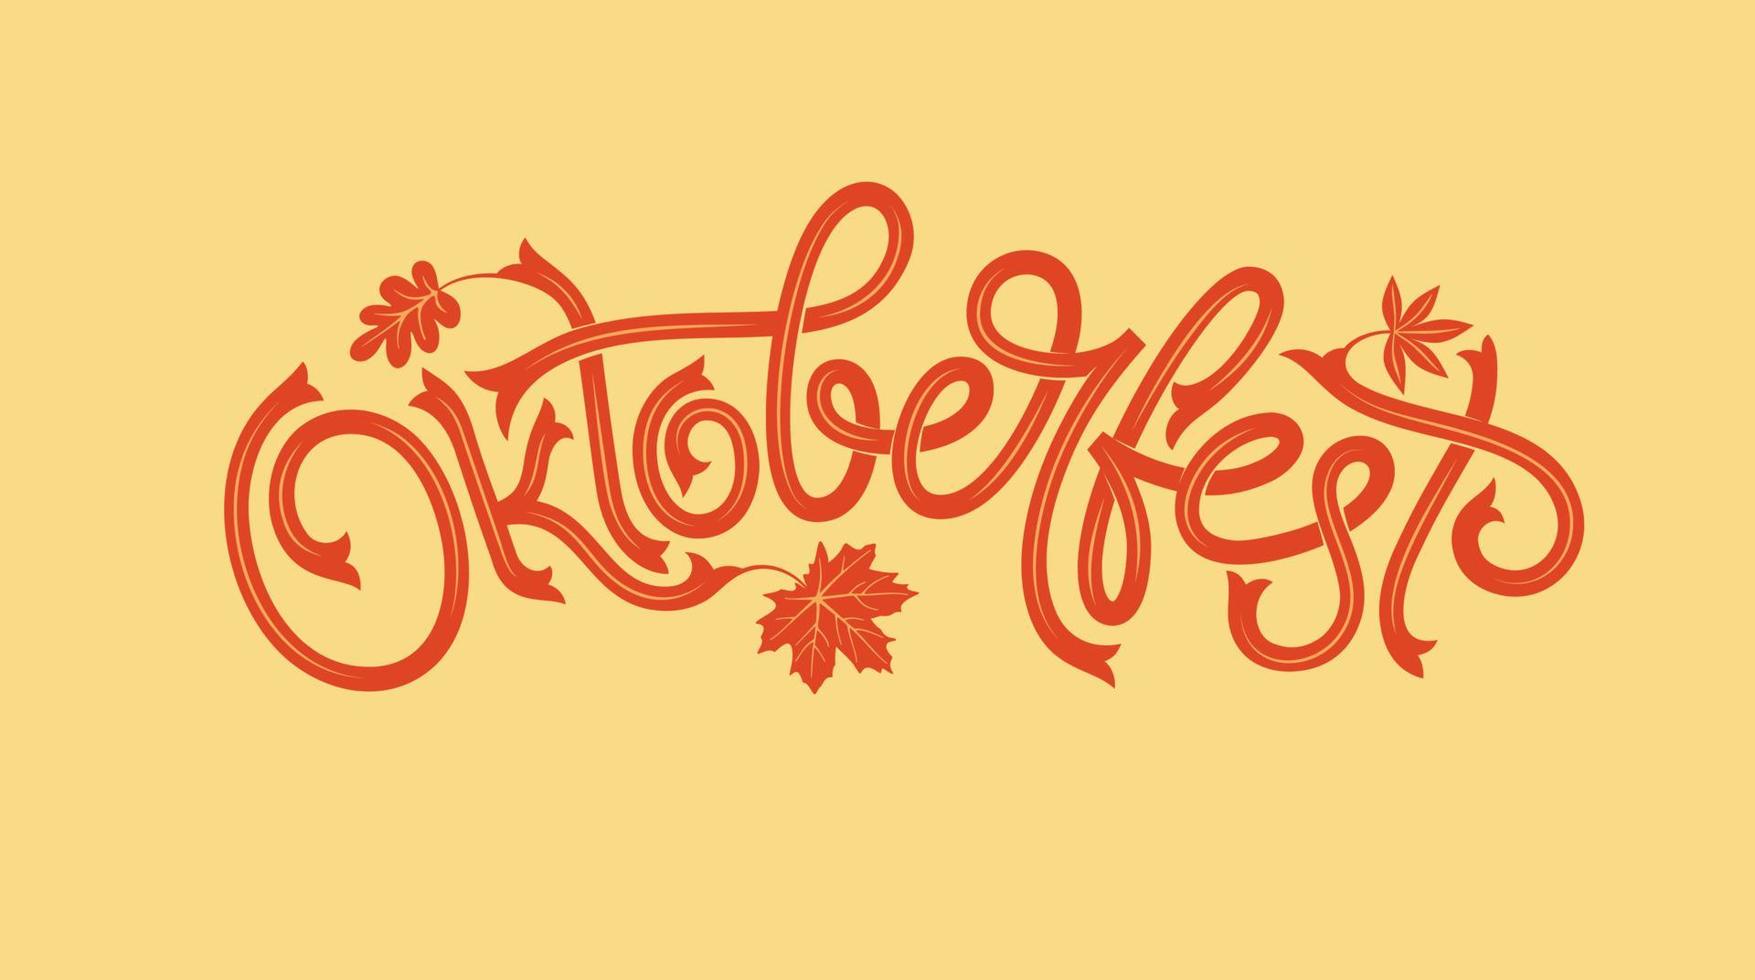 logotipo da oktoberfest com folha de plátano. banner de vetor de festival de cerveja. ilustração do design do festival da Baviera com guirlanda floral. letras de vetor para logotipo, cartaz, cartão, cartão postal, banner.